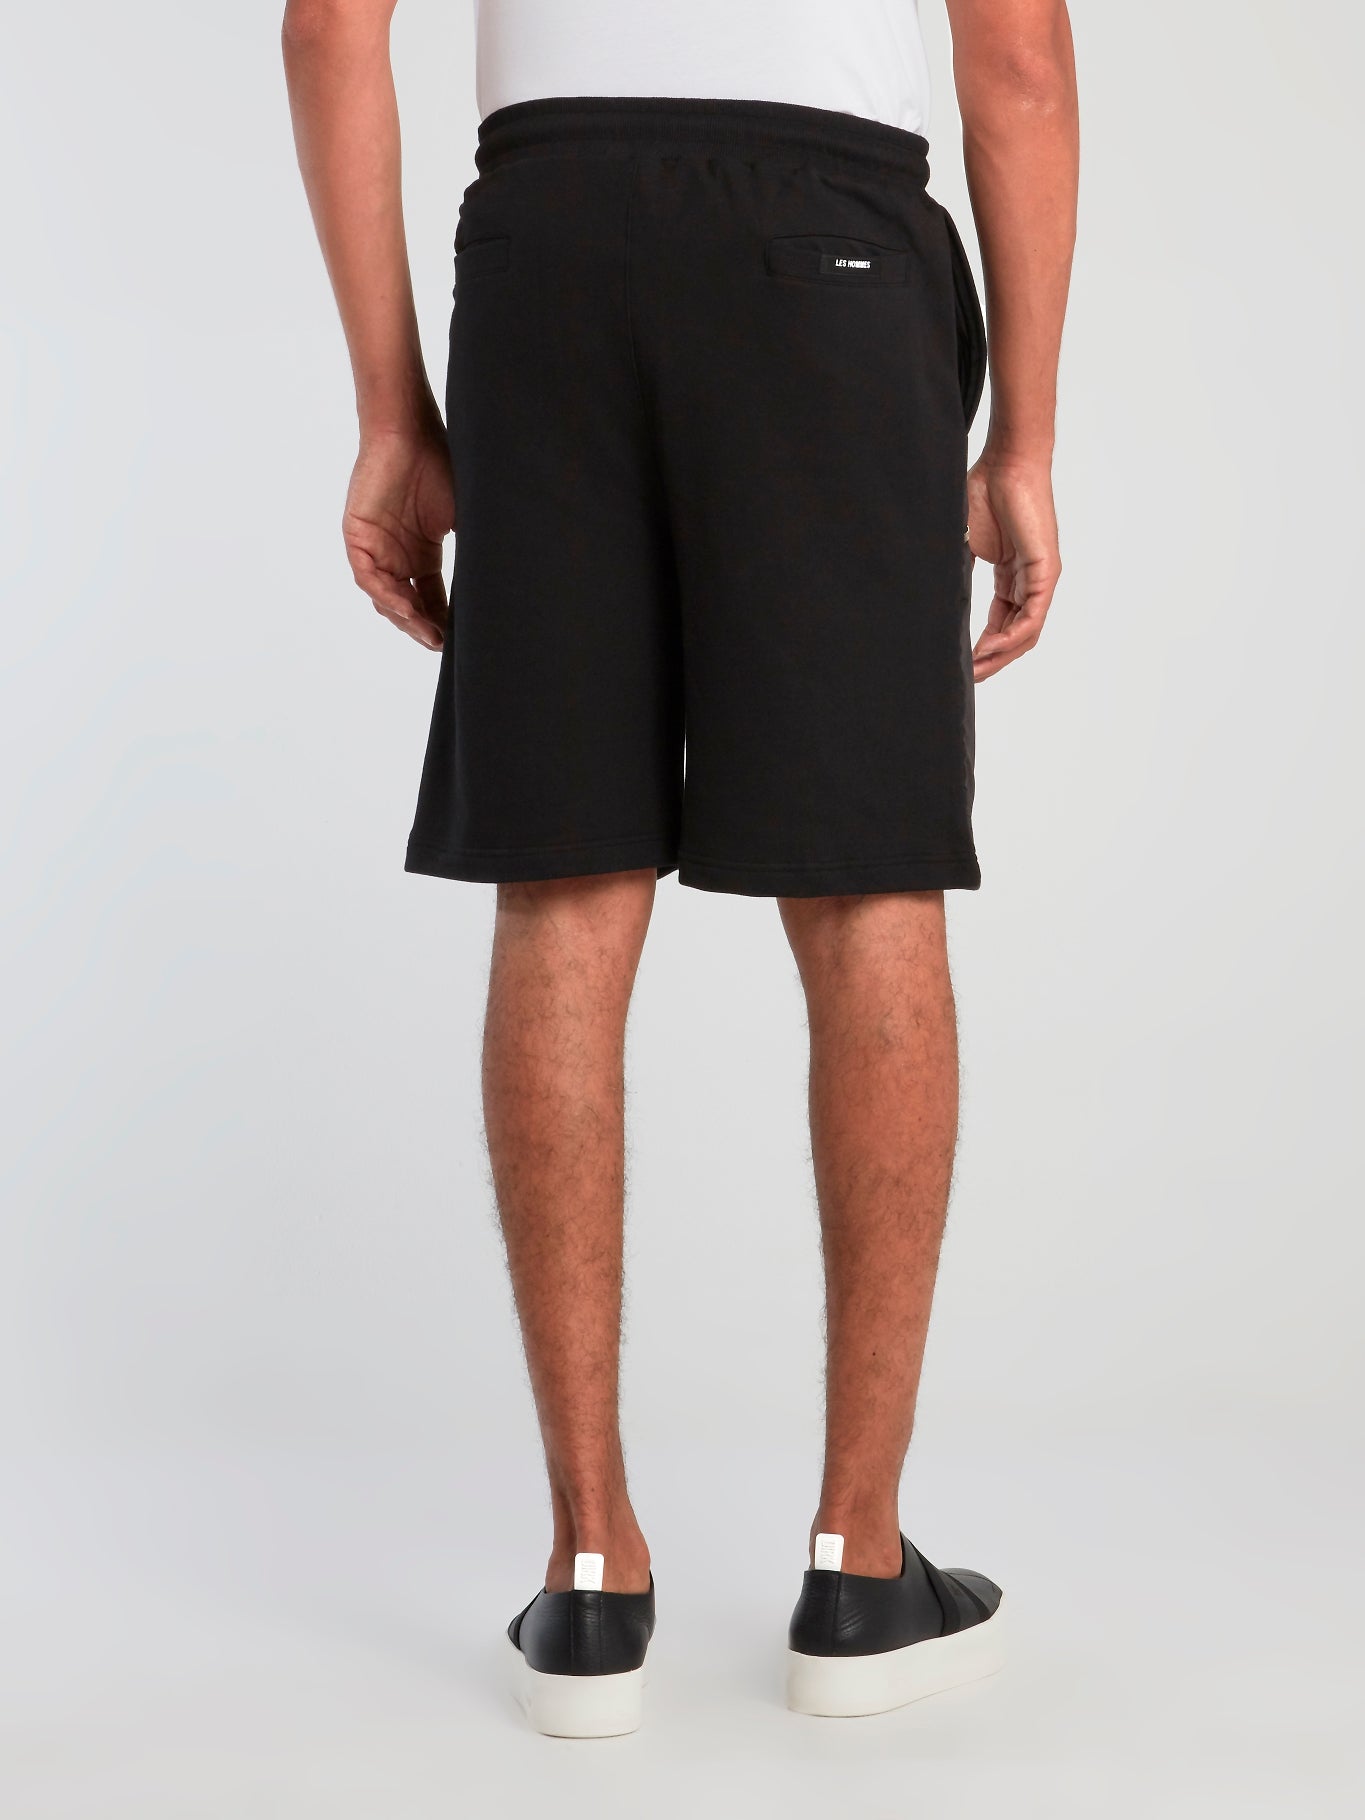 Black Zipper Pocket Core Shorts